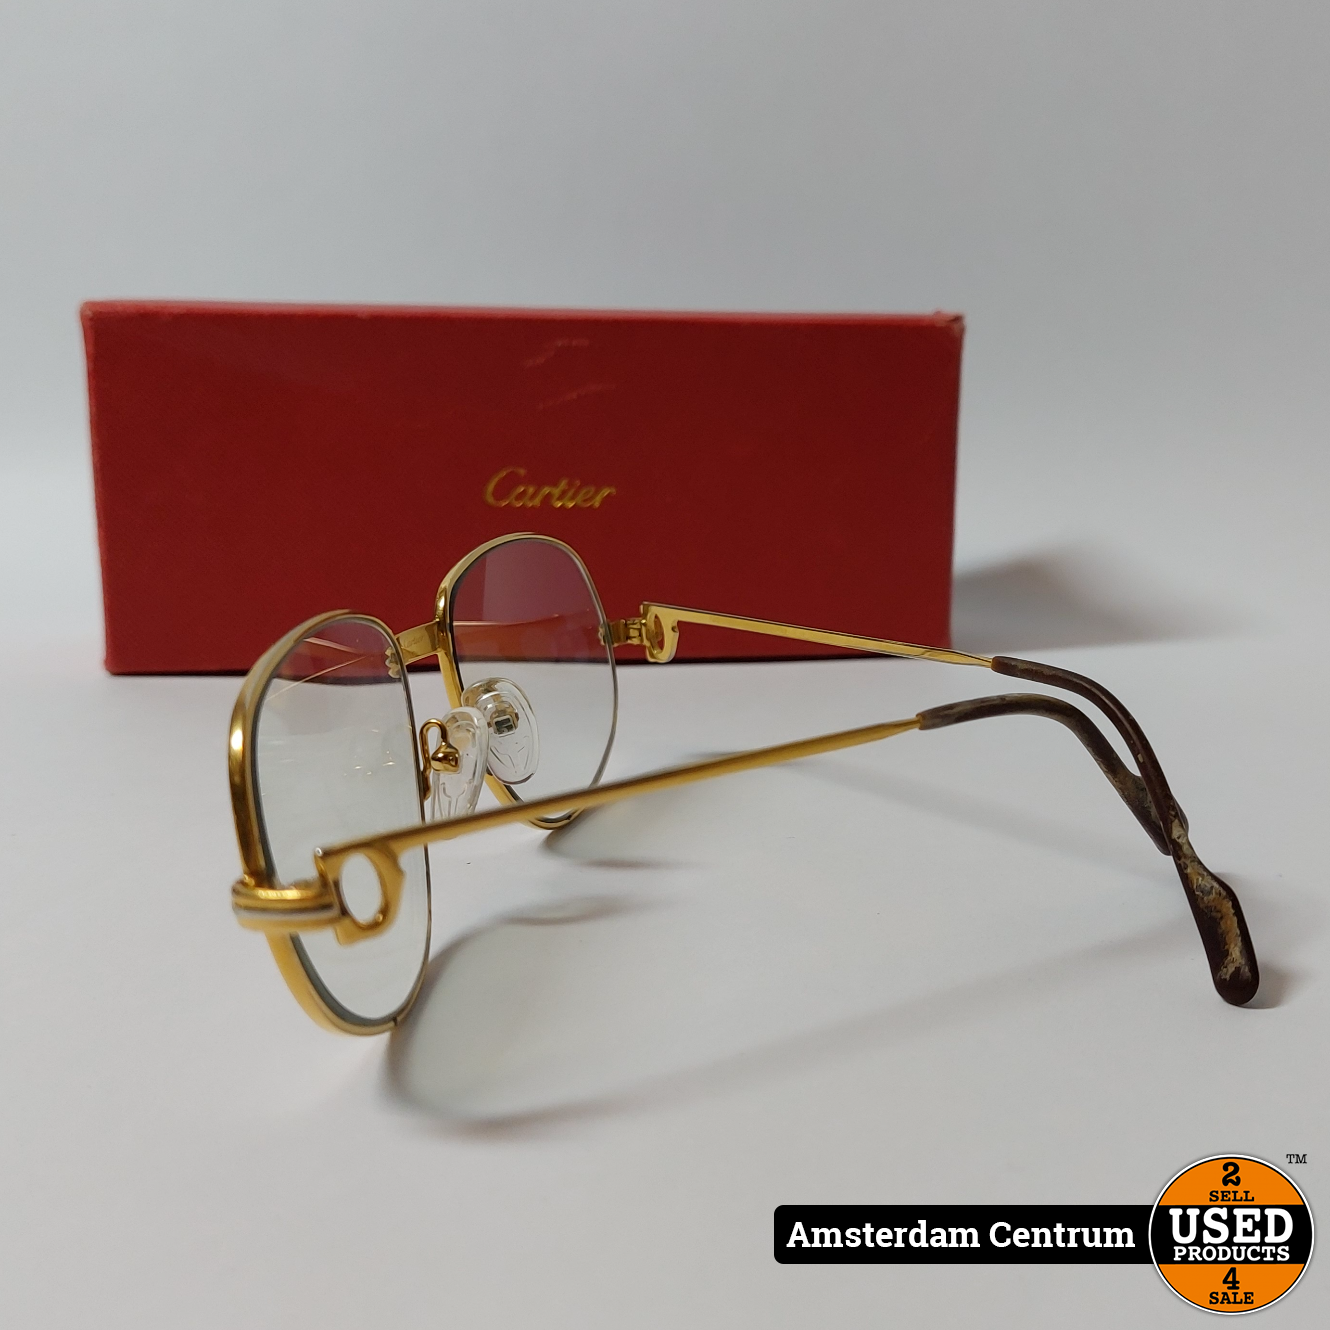 Het beste bekken Welvarend Cartier Romance bril goud | in koker - Used Products Amsterdam Centrum